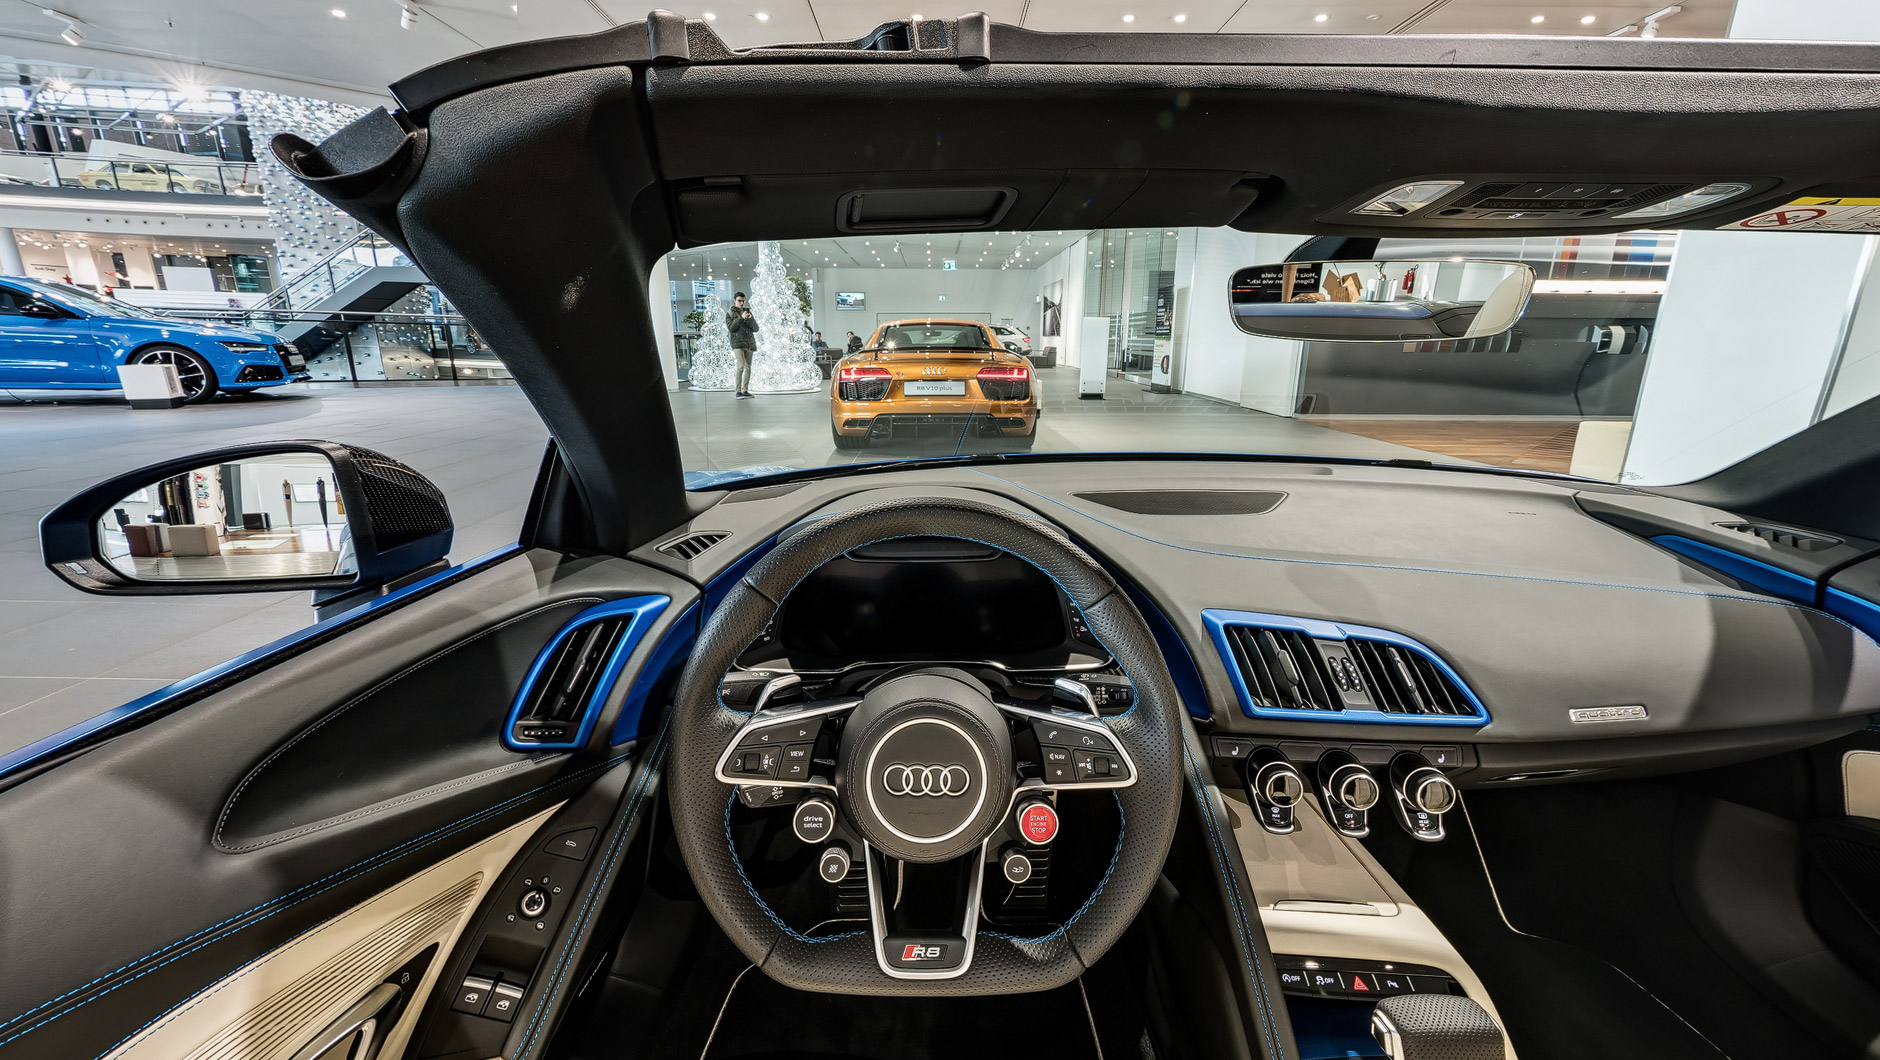 Exklusiver Innenraum / Interior eines Audi R8 Spyder in Arablau Matteffekt. Durch die Windschutzscheibe ist noch ein weiterer R8 zu sehen.